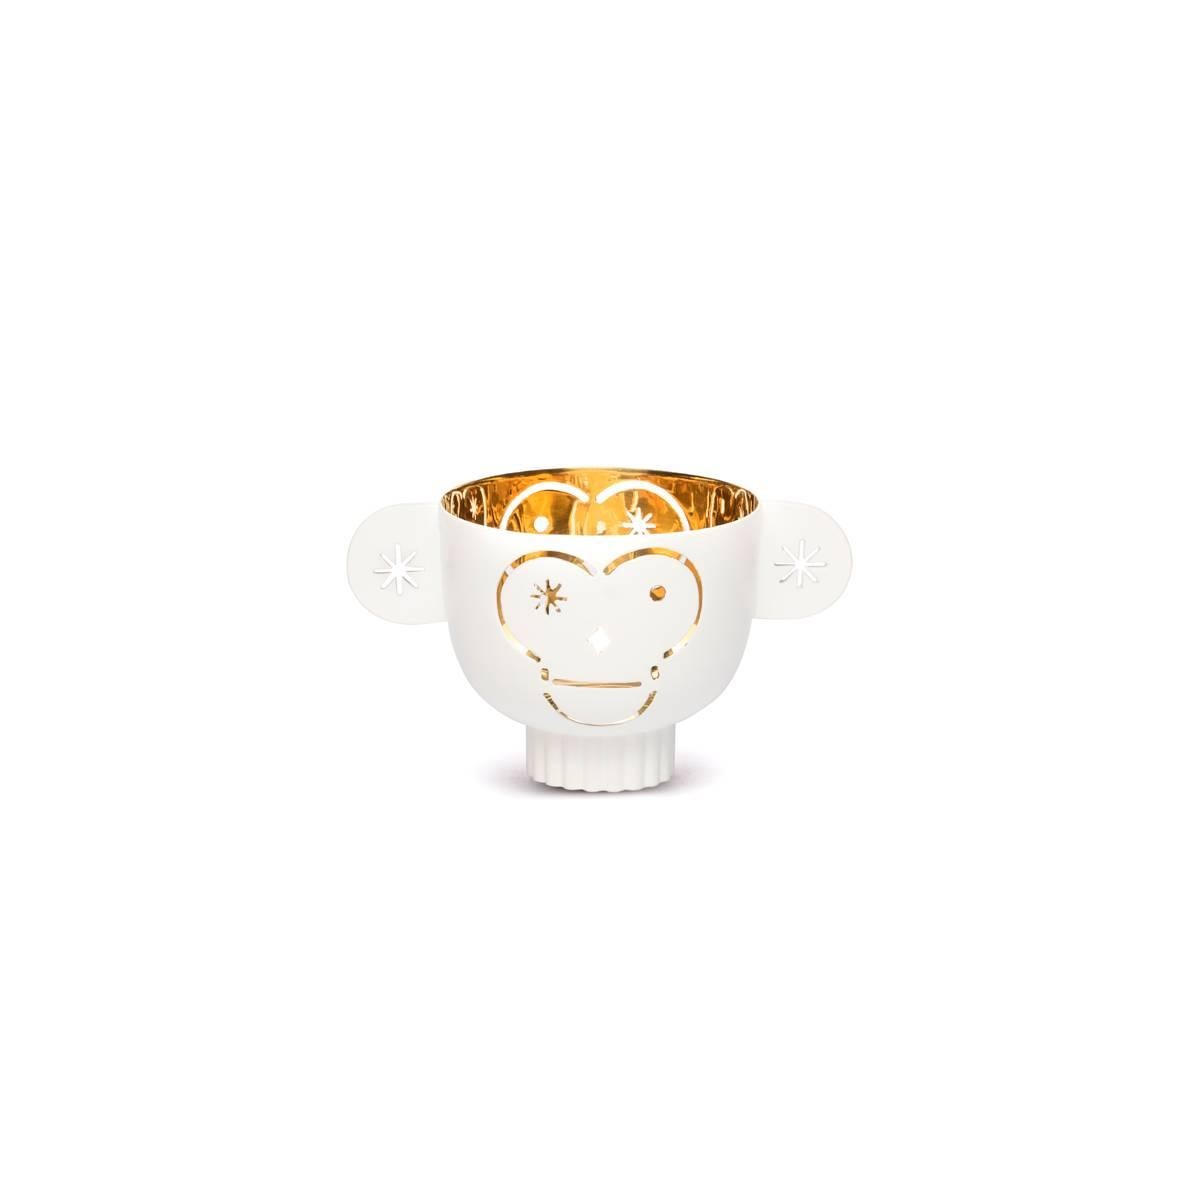 Monkos ist ein von Jaime Hayon entworfener Teelichthalter, ein Geschirr, das man nicht vergisst. Die Details zeigen die ausgefeilte Technik der Metallverarbeitung, die Monkos zu einem Objekt macht, dessen Reflexe und Glitzern auch ohne Kerzenlicht